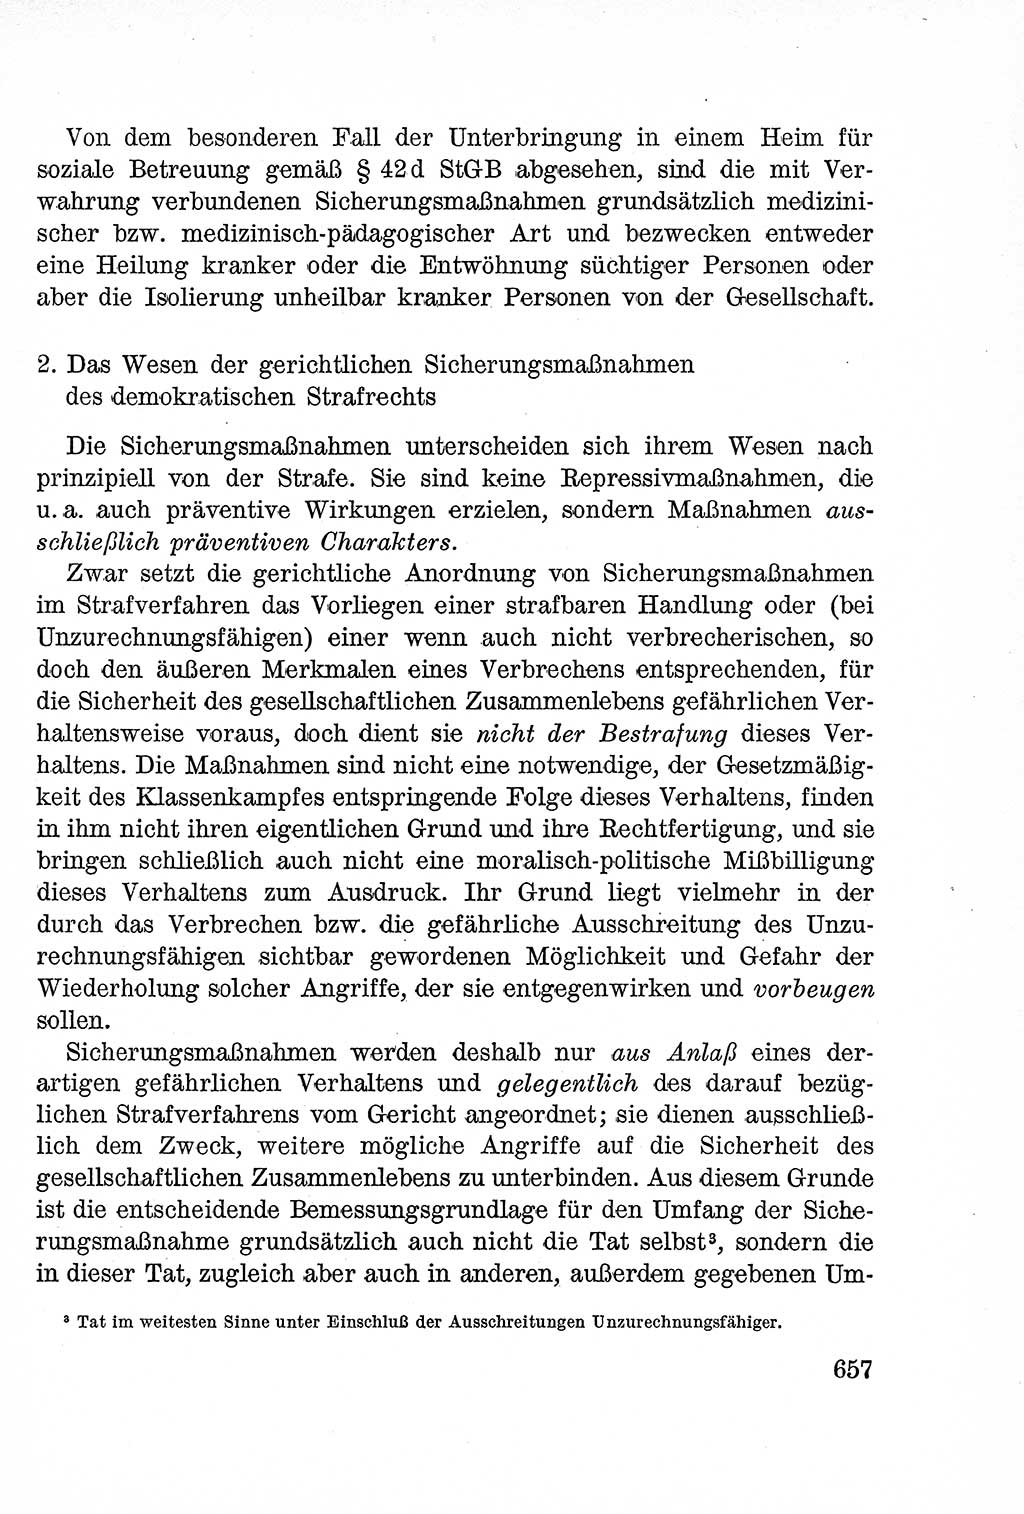 Lehrbuch des Strafrechts der Deutschen Demokratischen Republik (DDR), Allgemeiner Teil 1957, Seite 657 (Lb. Strafr. DDR AT 1957, S. 657)